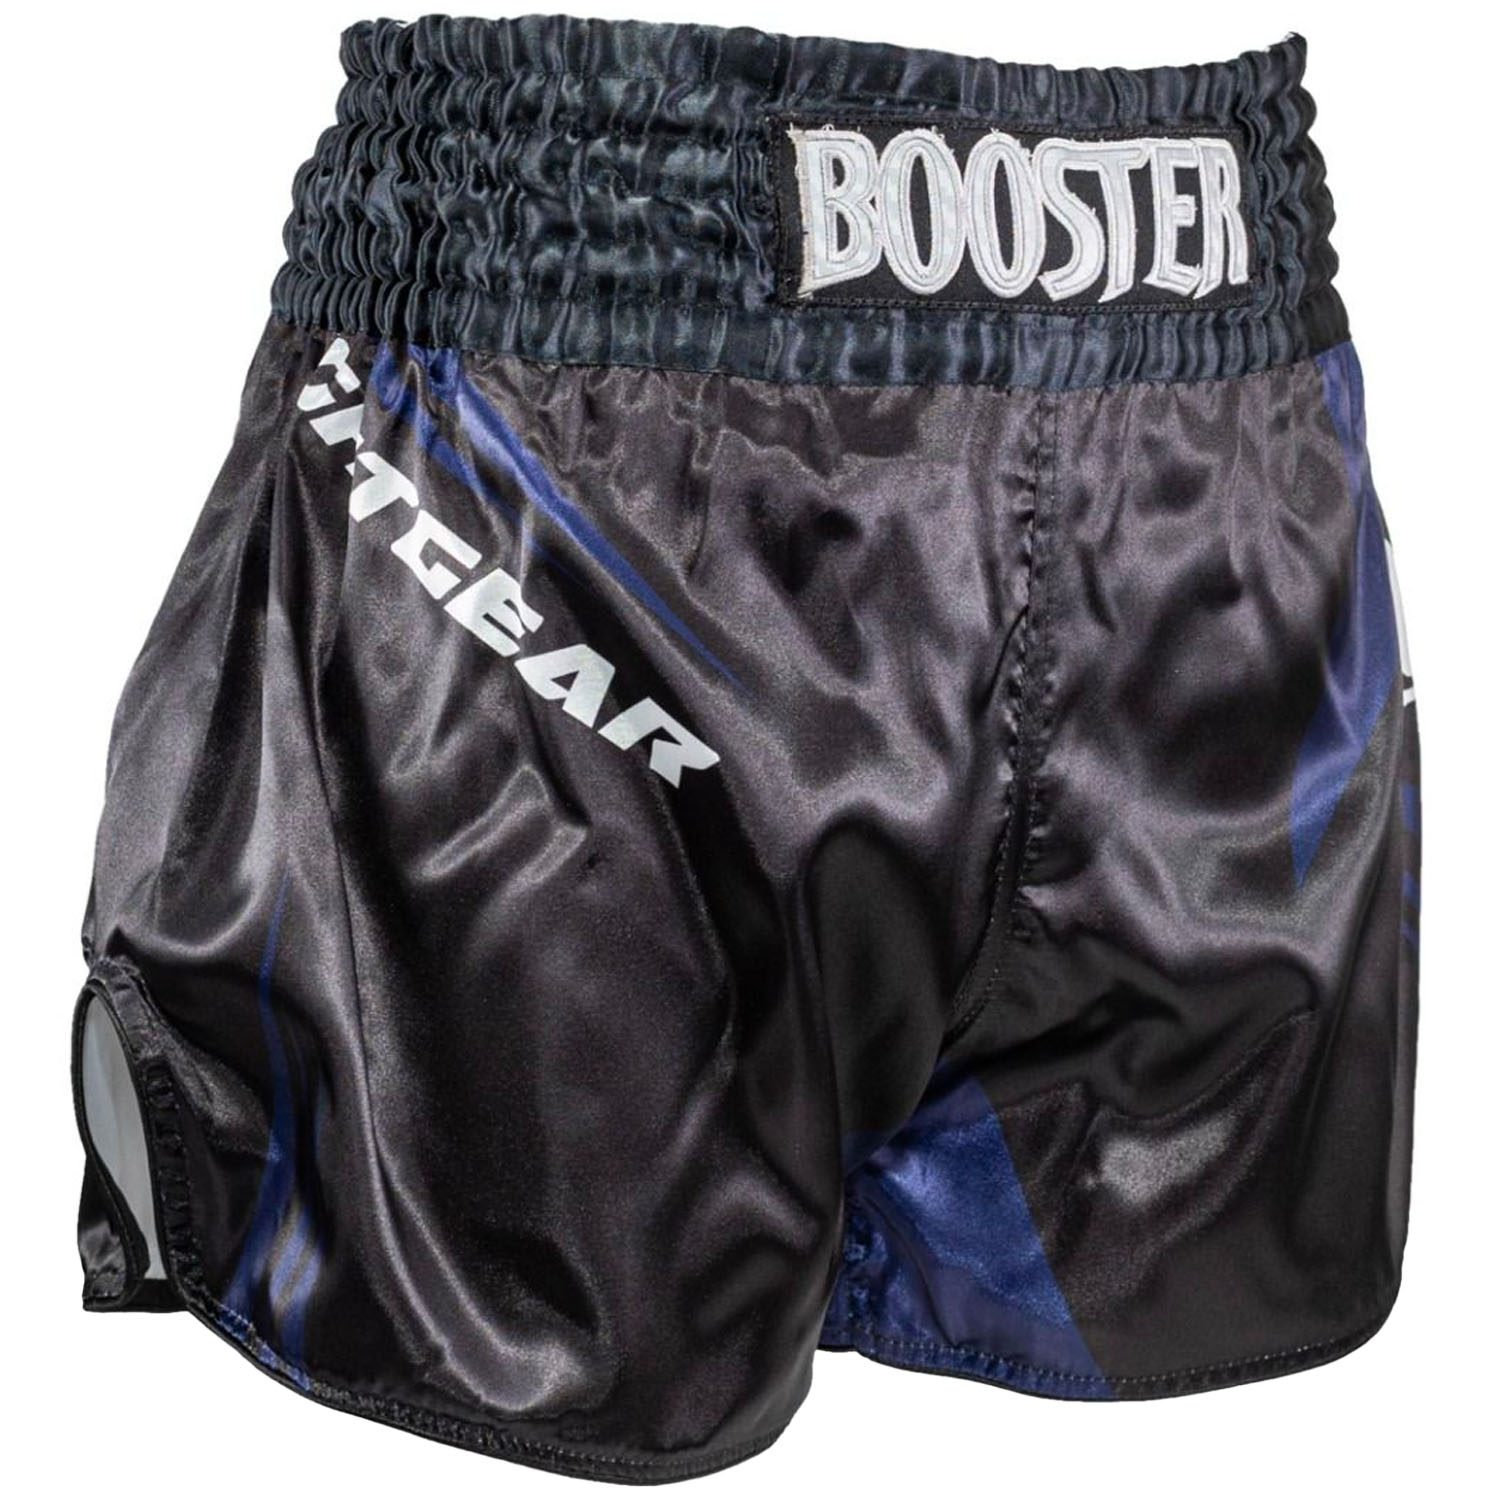 Booster Muay Thai Shorts, AD Xplosion 1, schwarz-blau